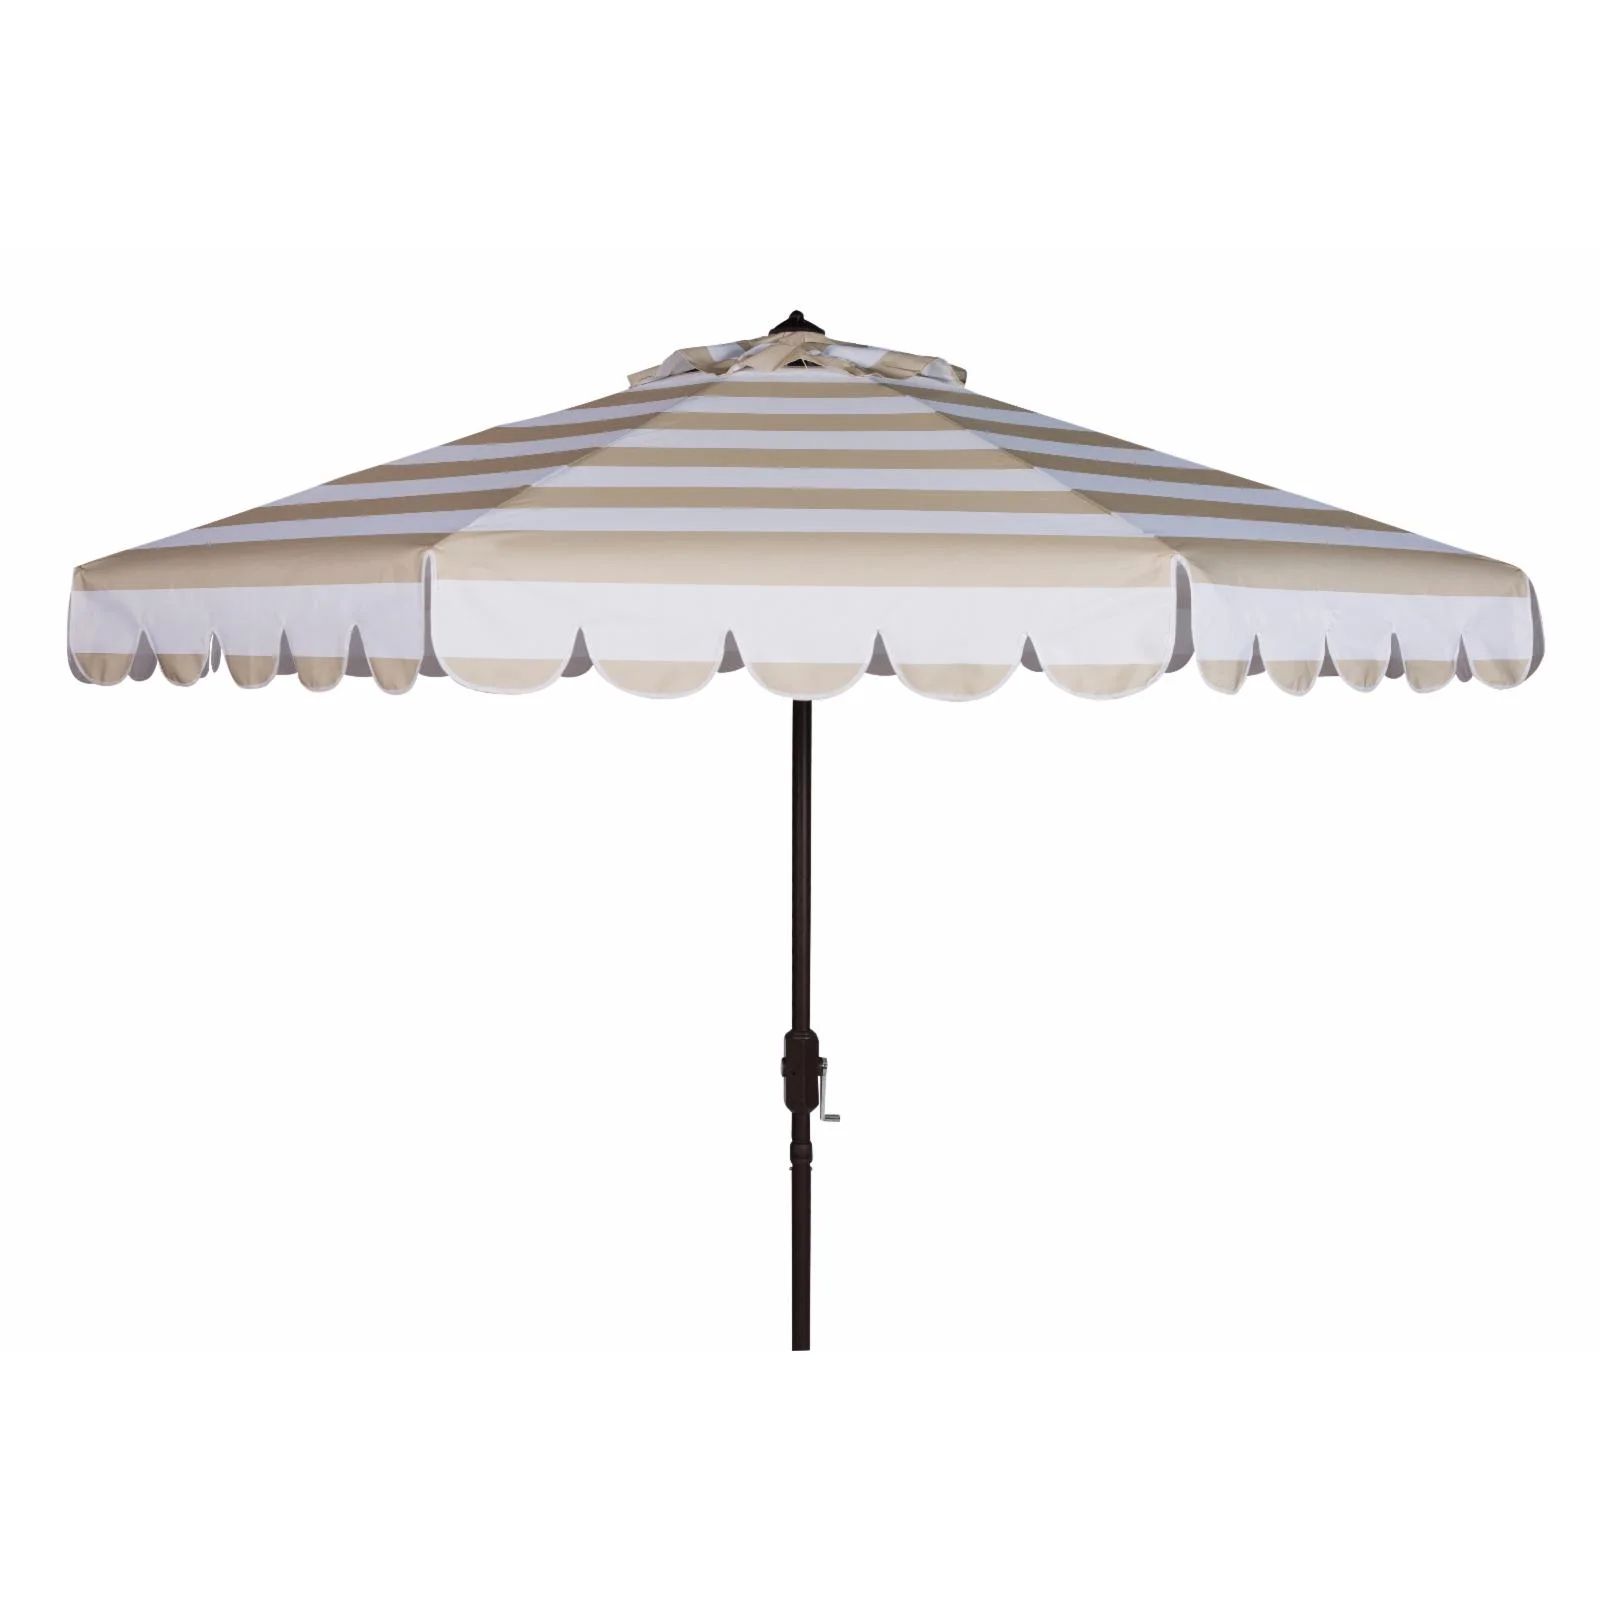 SAFAVIEH Vienna 11' Market Crank Round Patio Umbrella, Beige/White | Walmart (US)